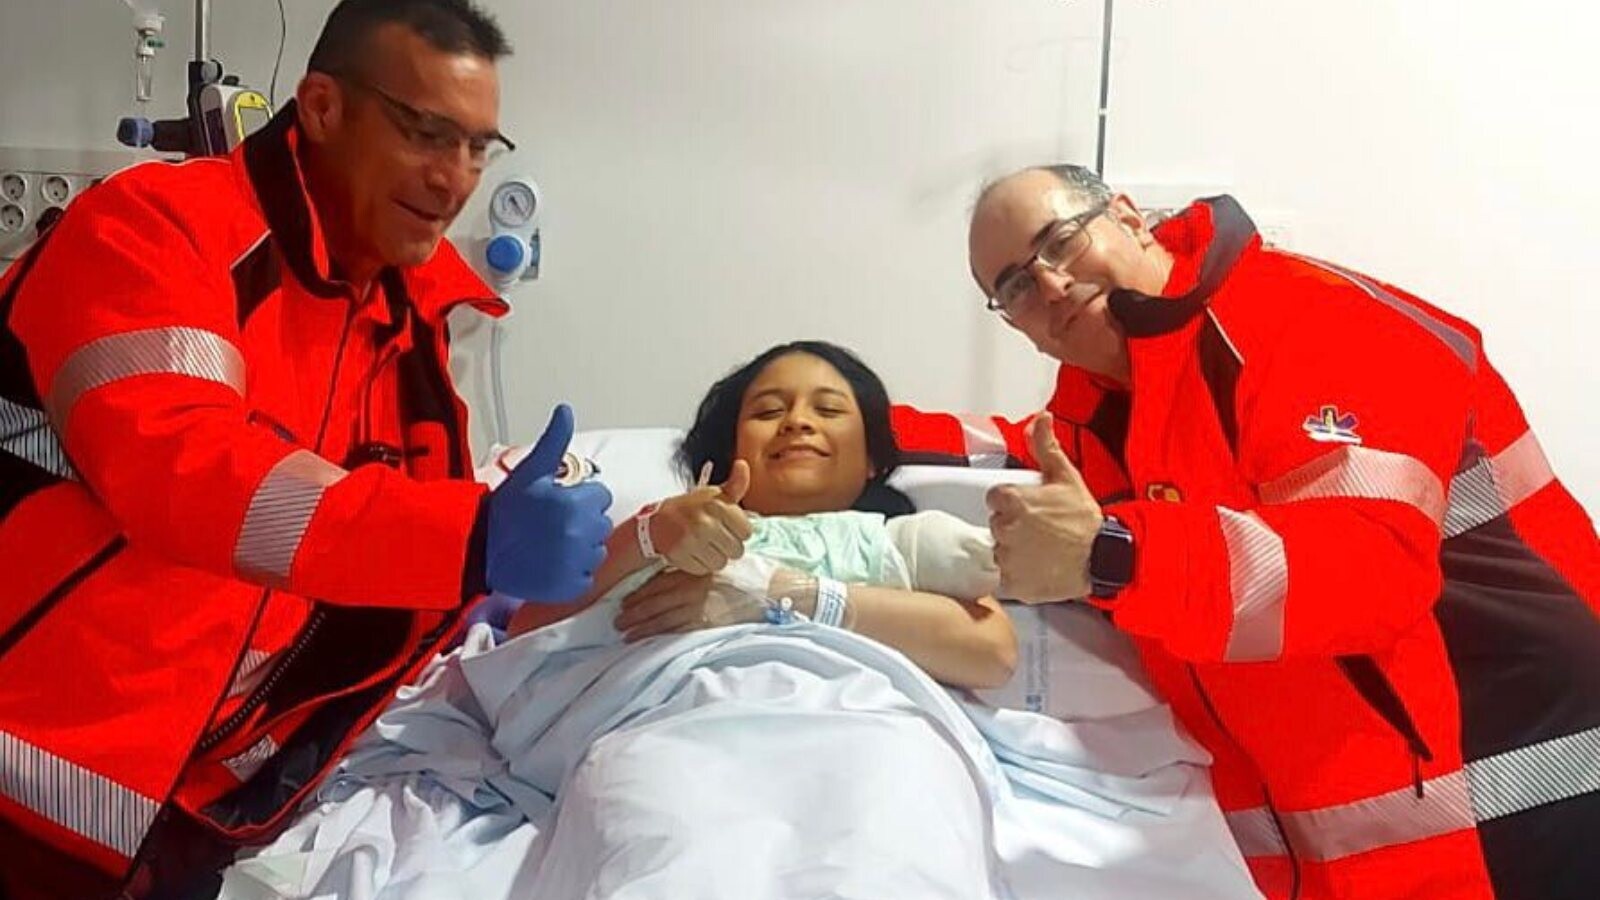 Nace un niño en una ambulancia del SEAPA de camino al hospital